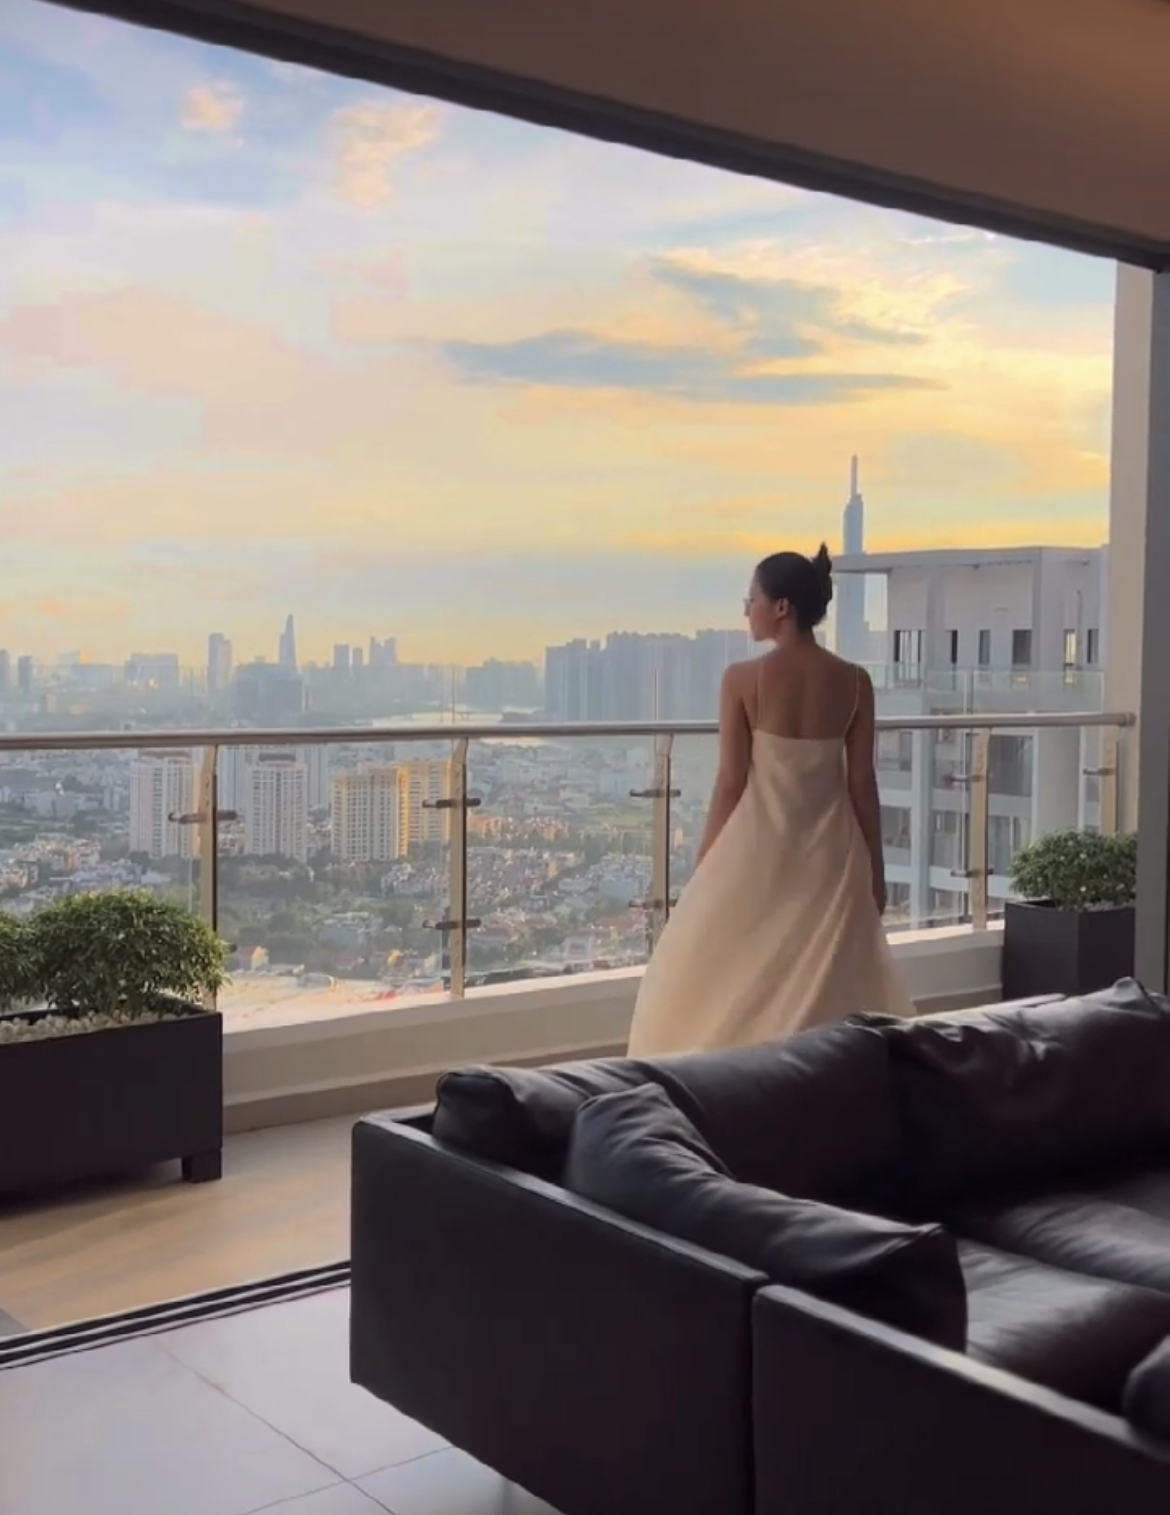 Hoa hậu Việt có 2 cơ ngơi ở tuổi 28: Penthouse sang xịn chưa choáng bằng toàn cảnh biệt thự tại khu nhà giàu - Ảnh 12.